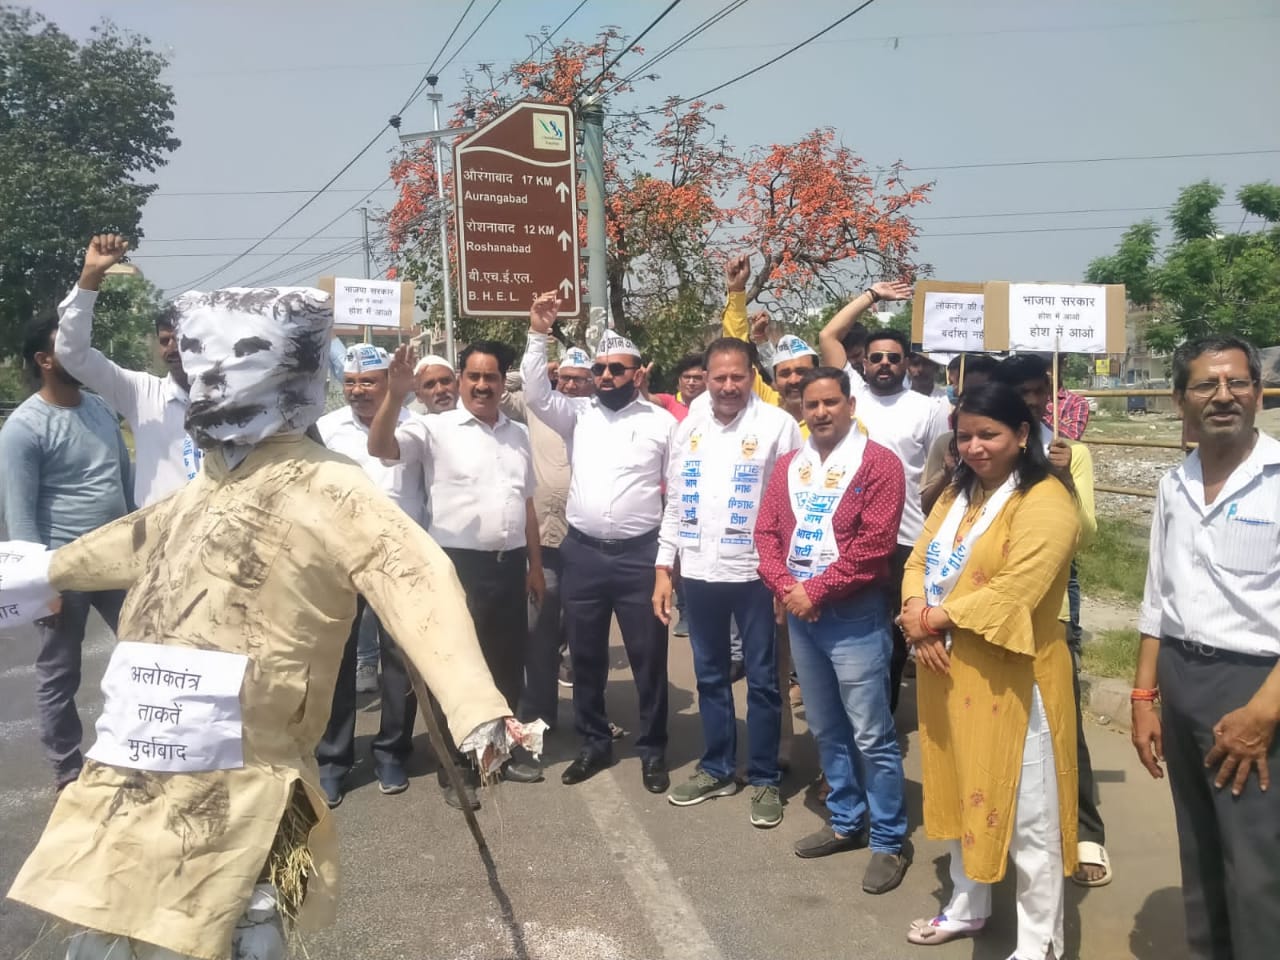 भाजपा कार्यकर्ताओ के द्वारा दिल्ली मुख्यमंत्री के घर पर तोड़फोड़ के विरोध में आम आदमी कार्यकर्ताओं हरिद्वार में प्रदर्शन